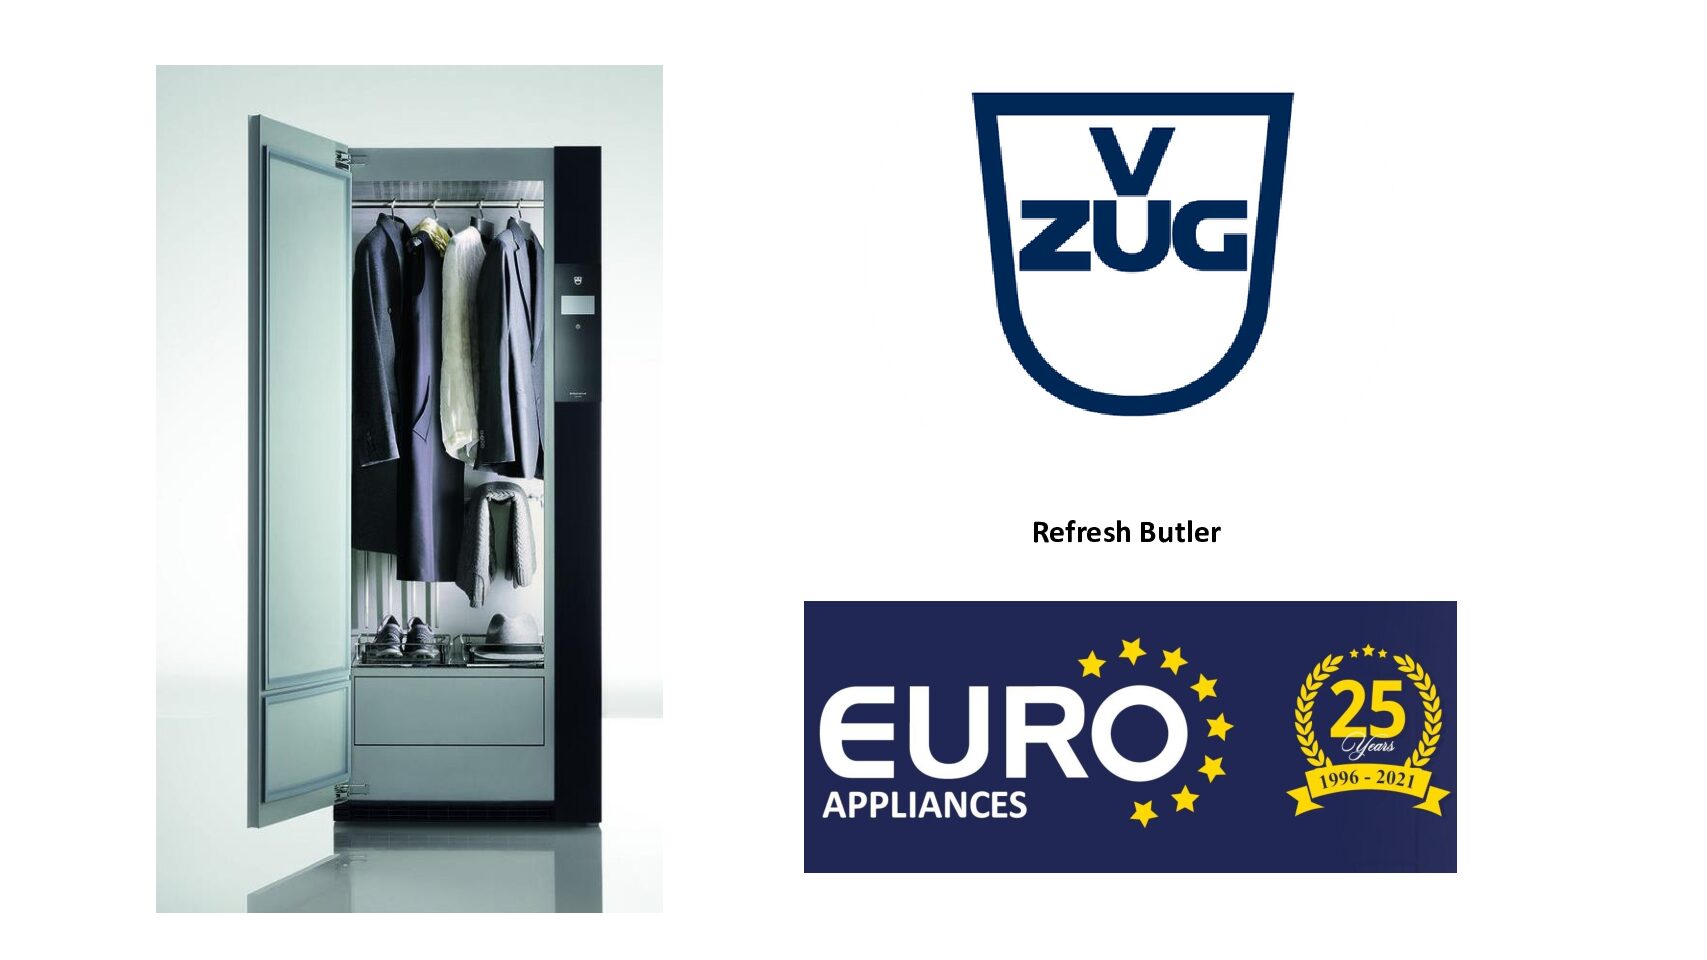 Euro Appliances-V-ZUG